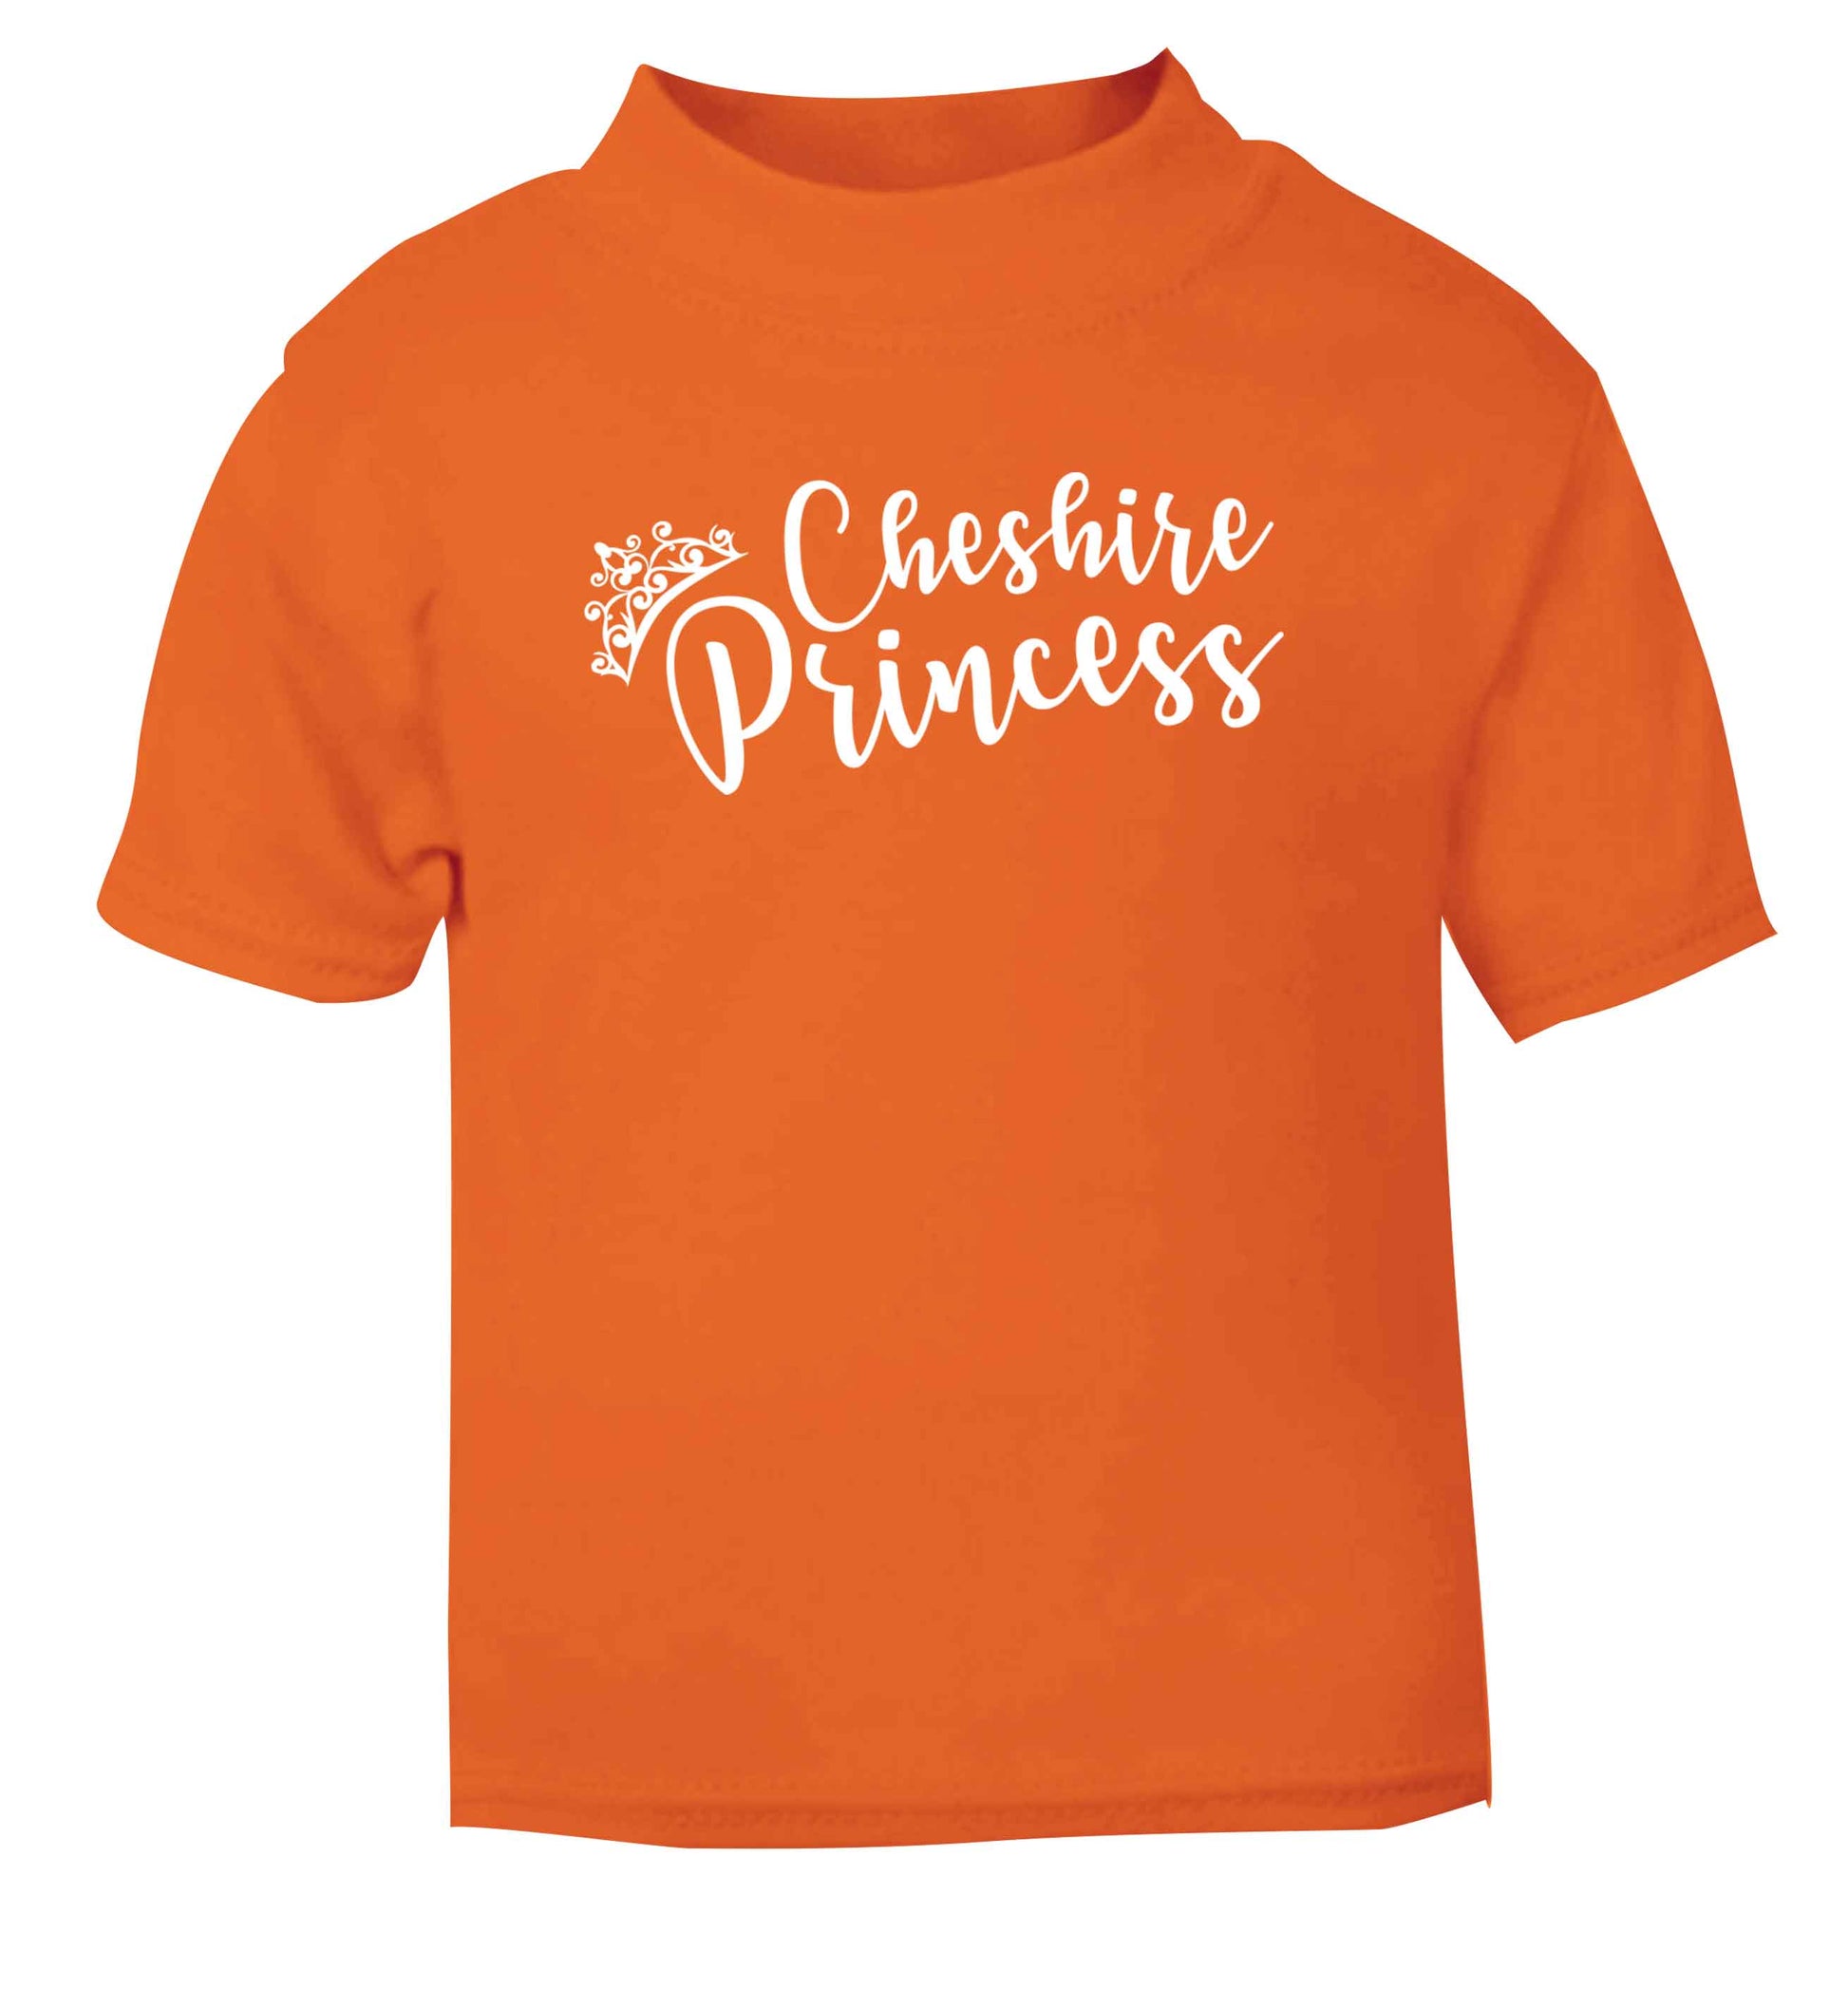 Cheshire princess orange Baby Toddler Tshirt 2 Years